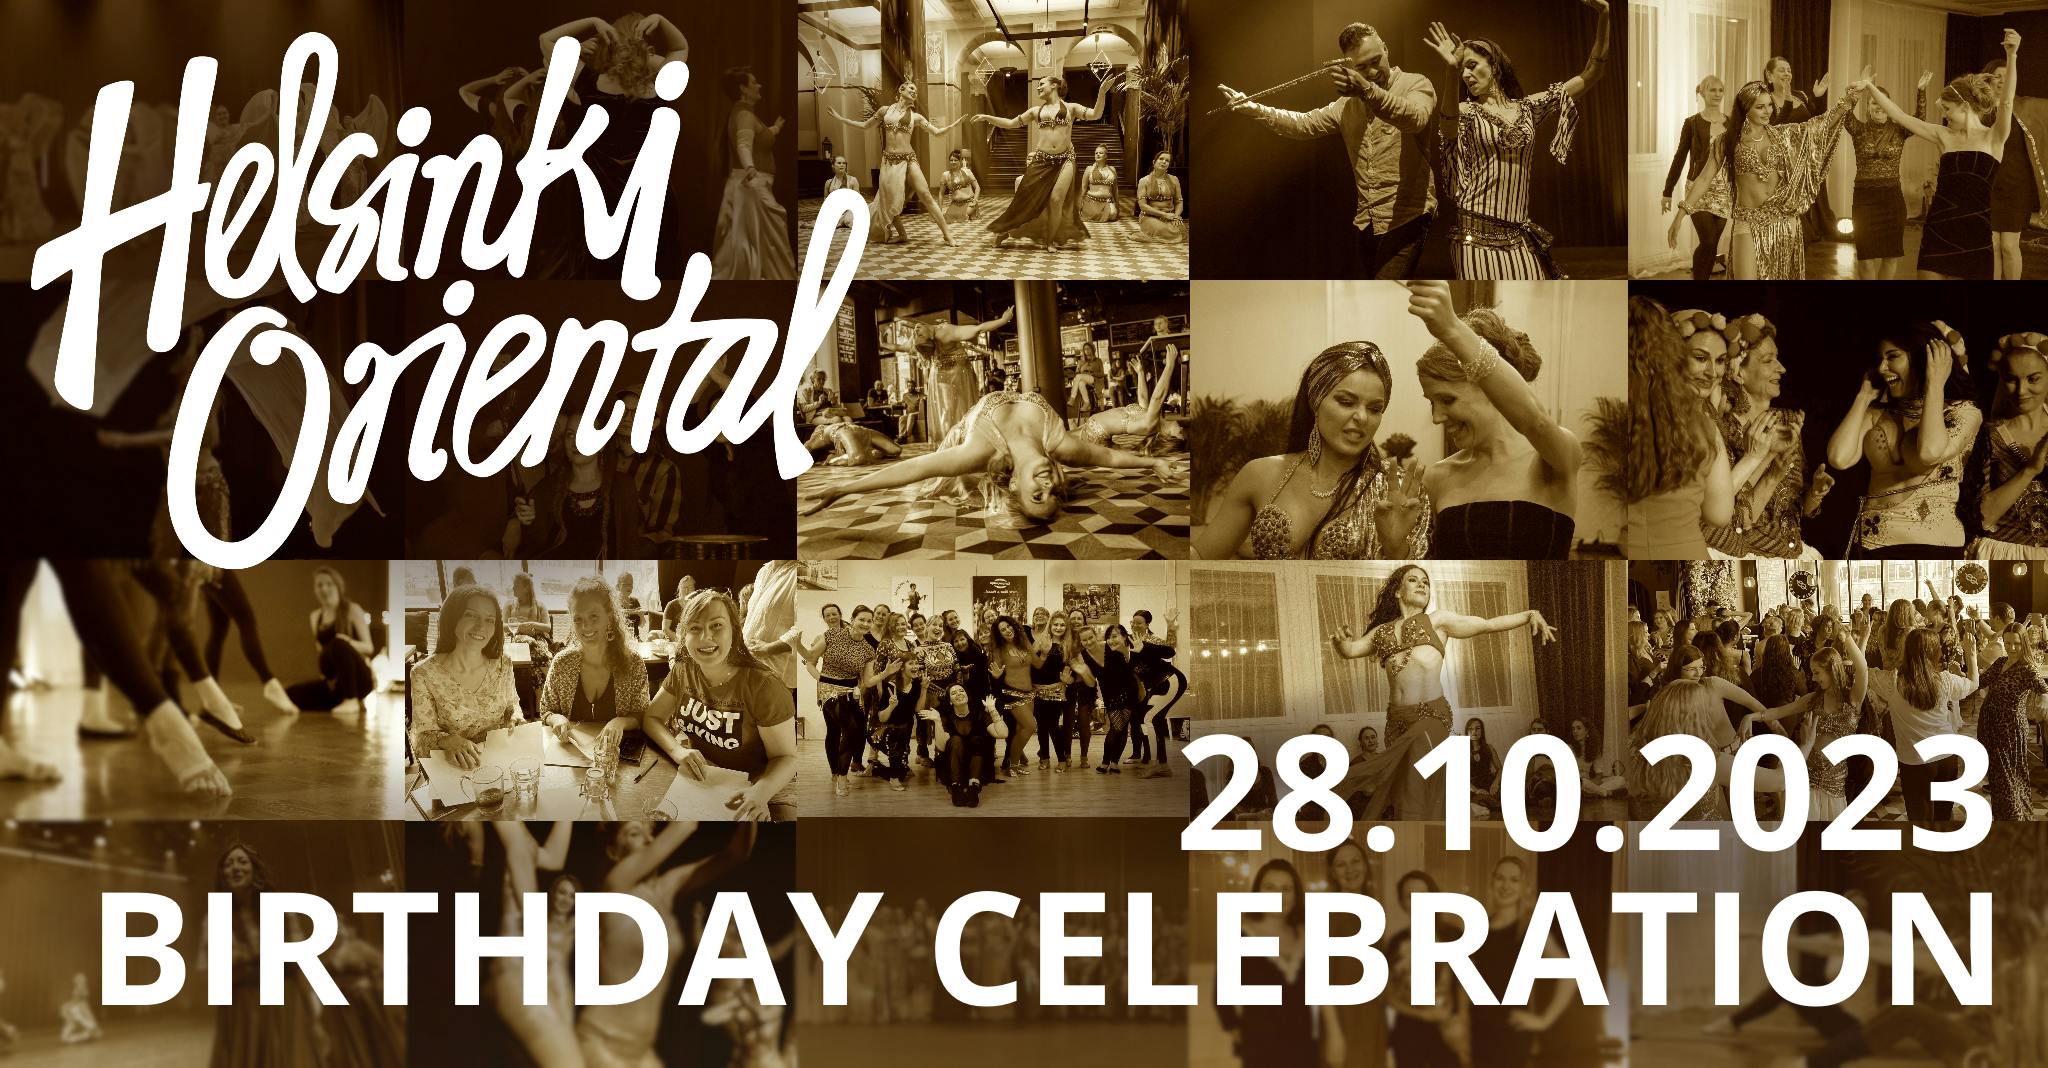 Helsinki Oriental Birthday Celebration 28.10.2023